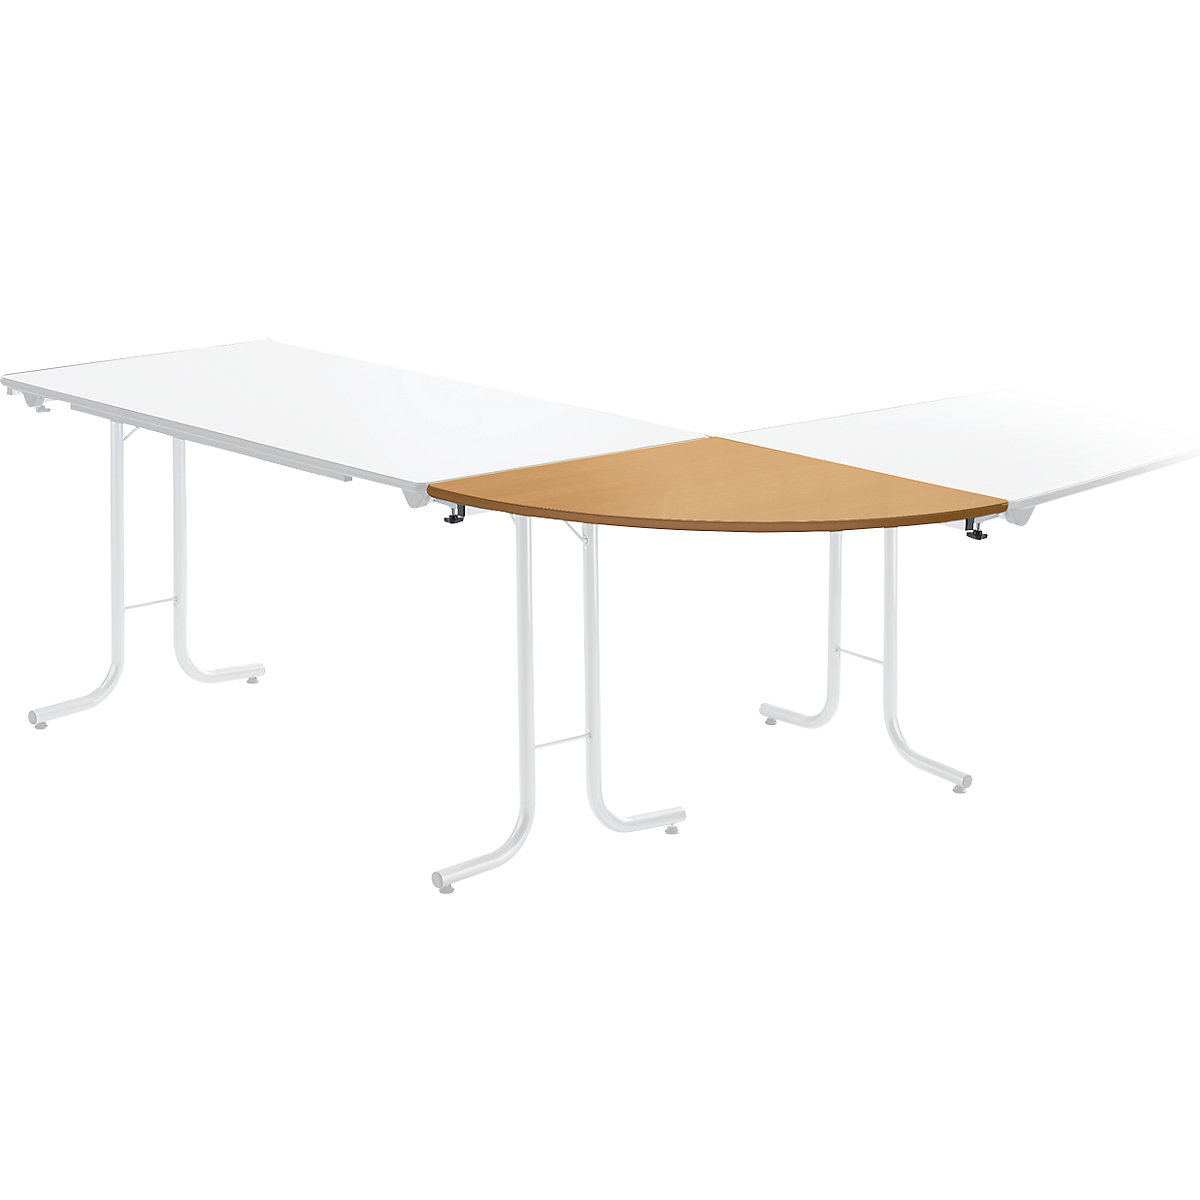 Dodatkowy stół do stołu składanego, blat: ćwierćkoło, 700 x 700 mm, szkielet w kolorze aluminium, blat: imit. buku-5